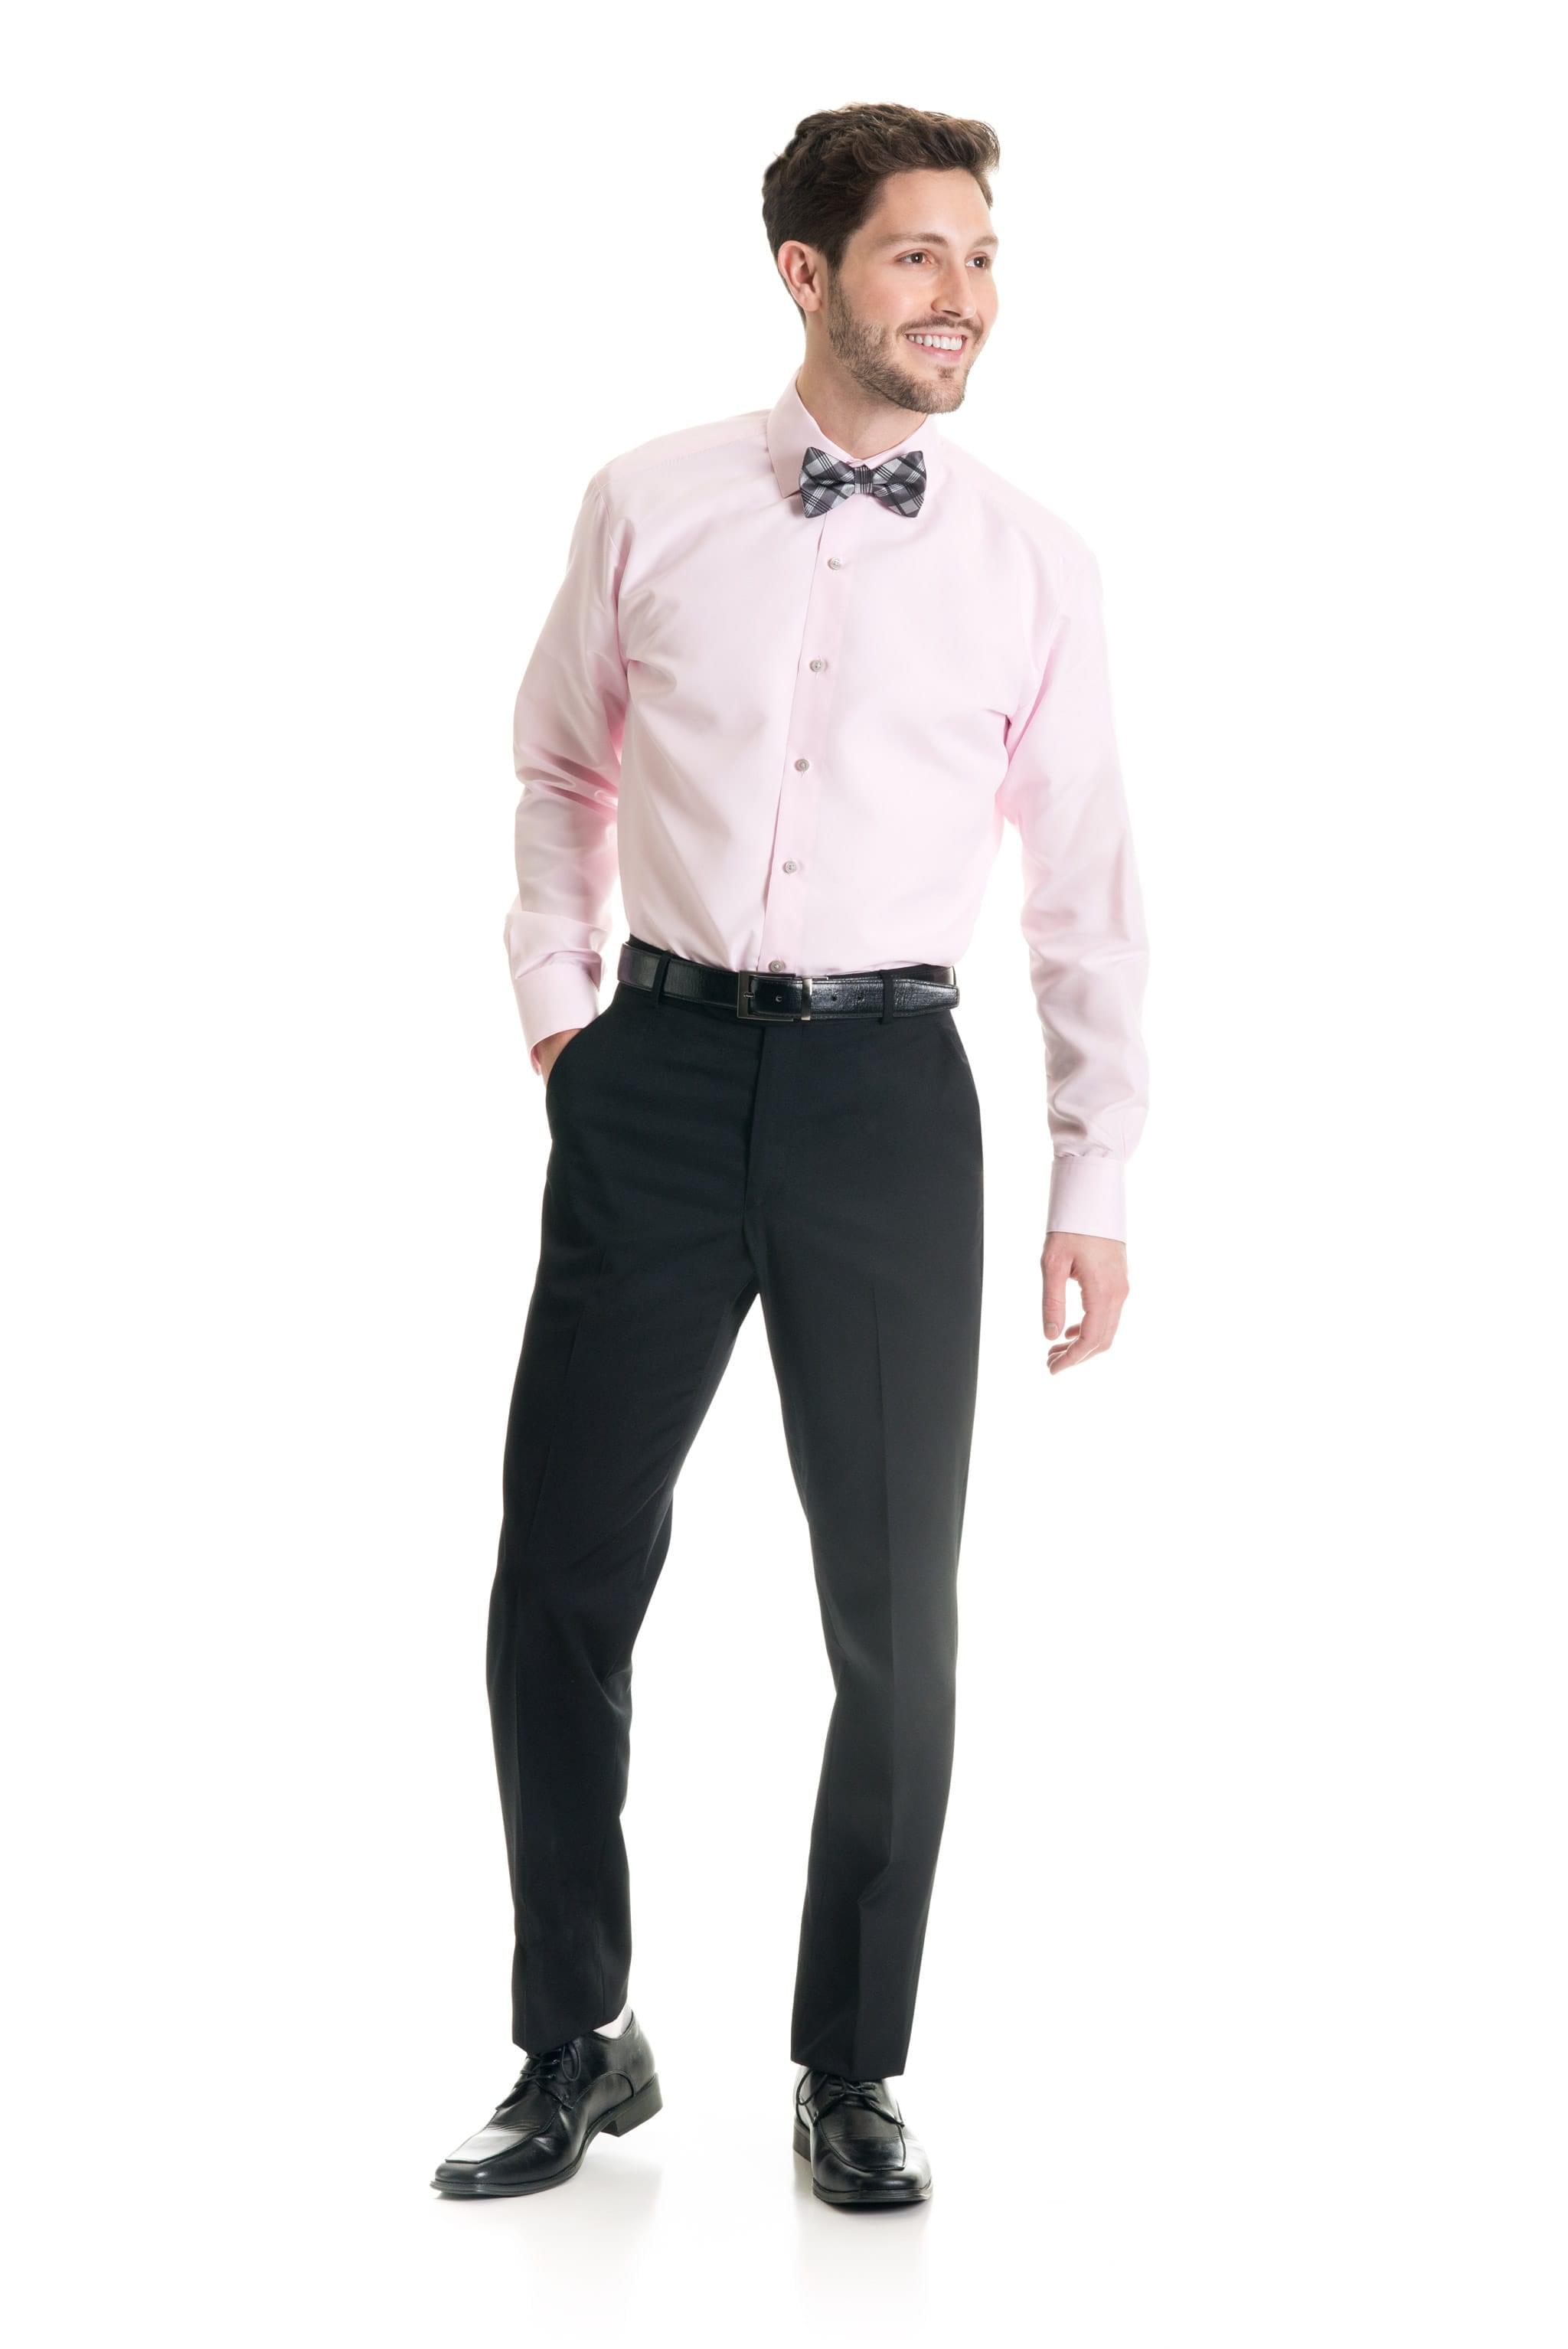 Black Performance Stretch Slim Fit Suit Pants - Jim's Formal Wear